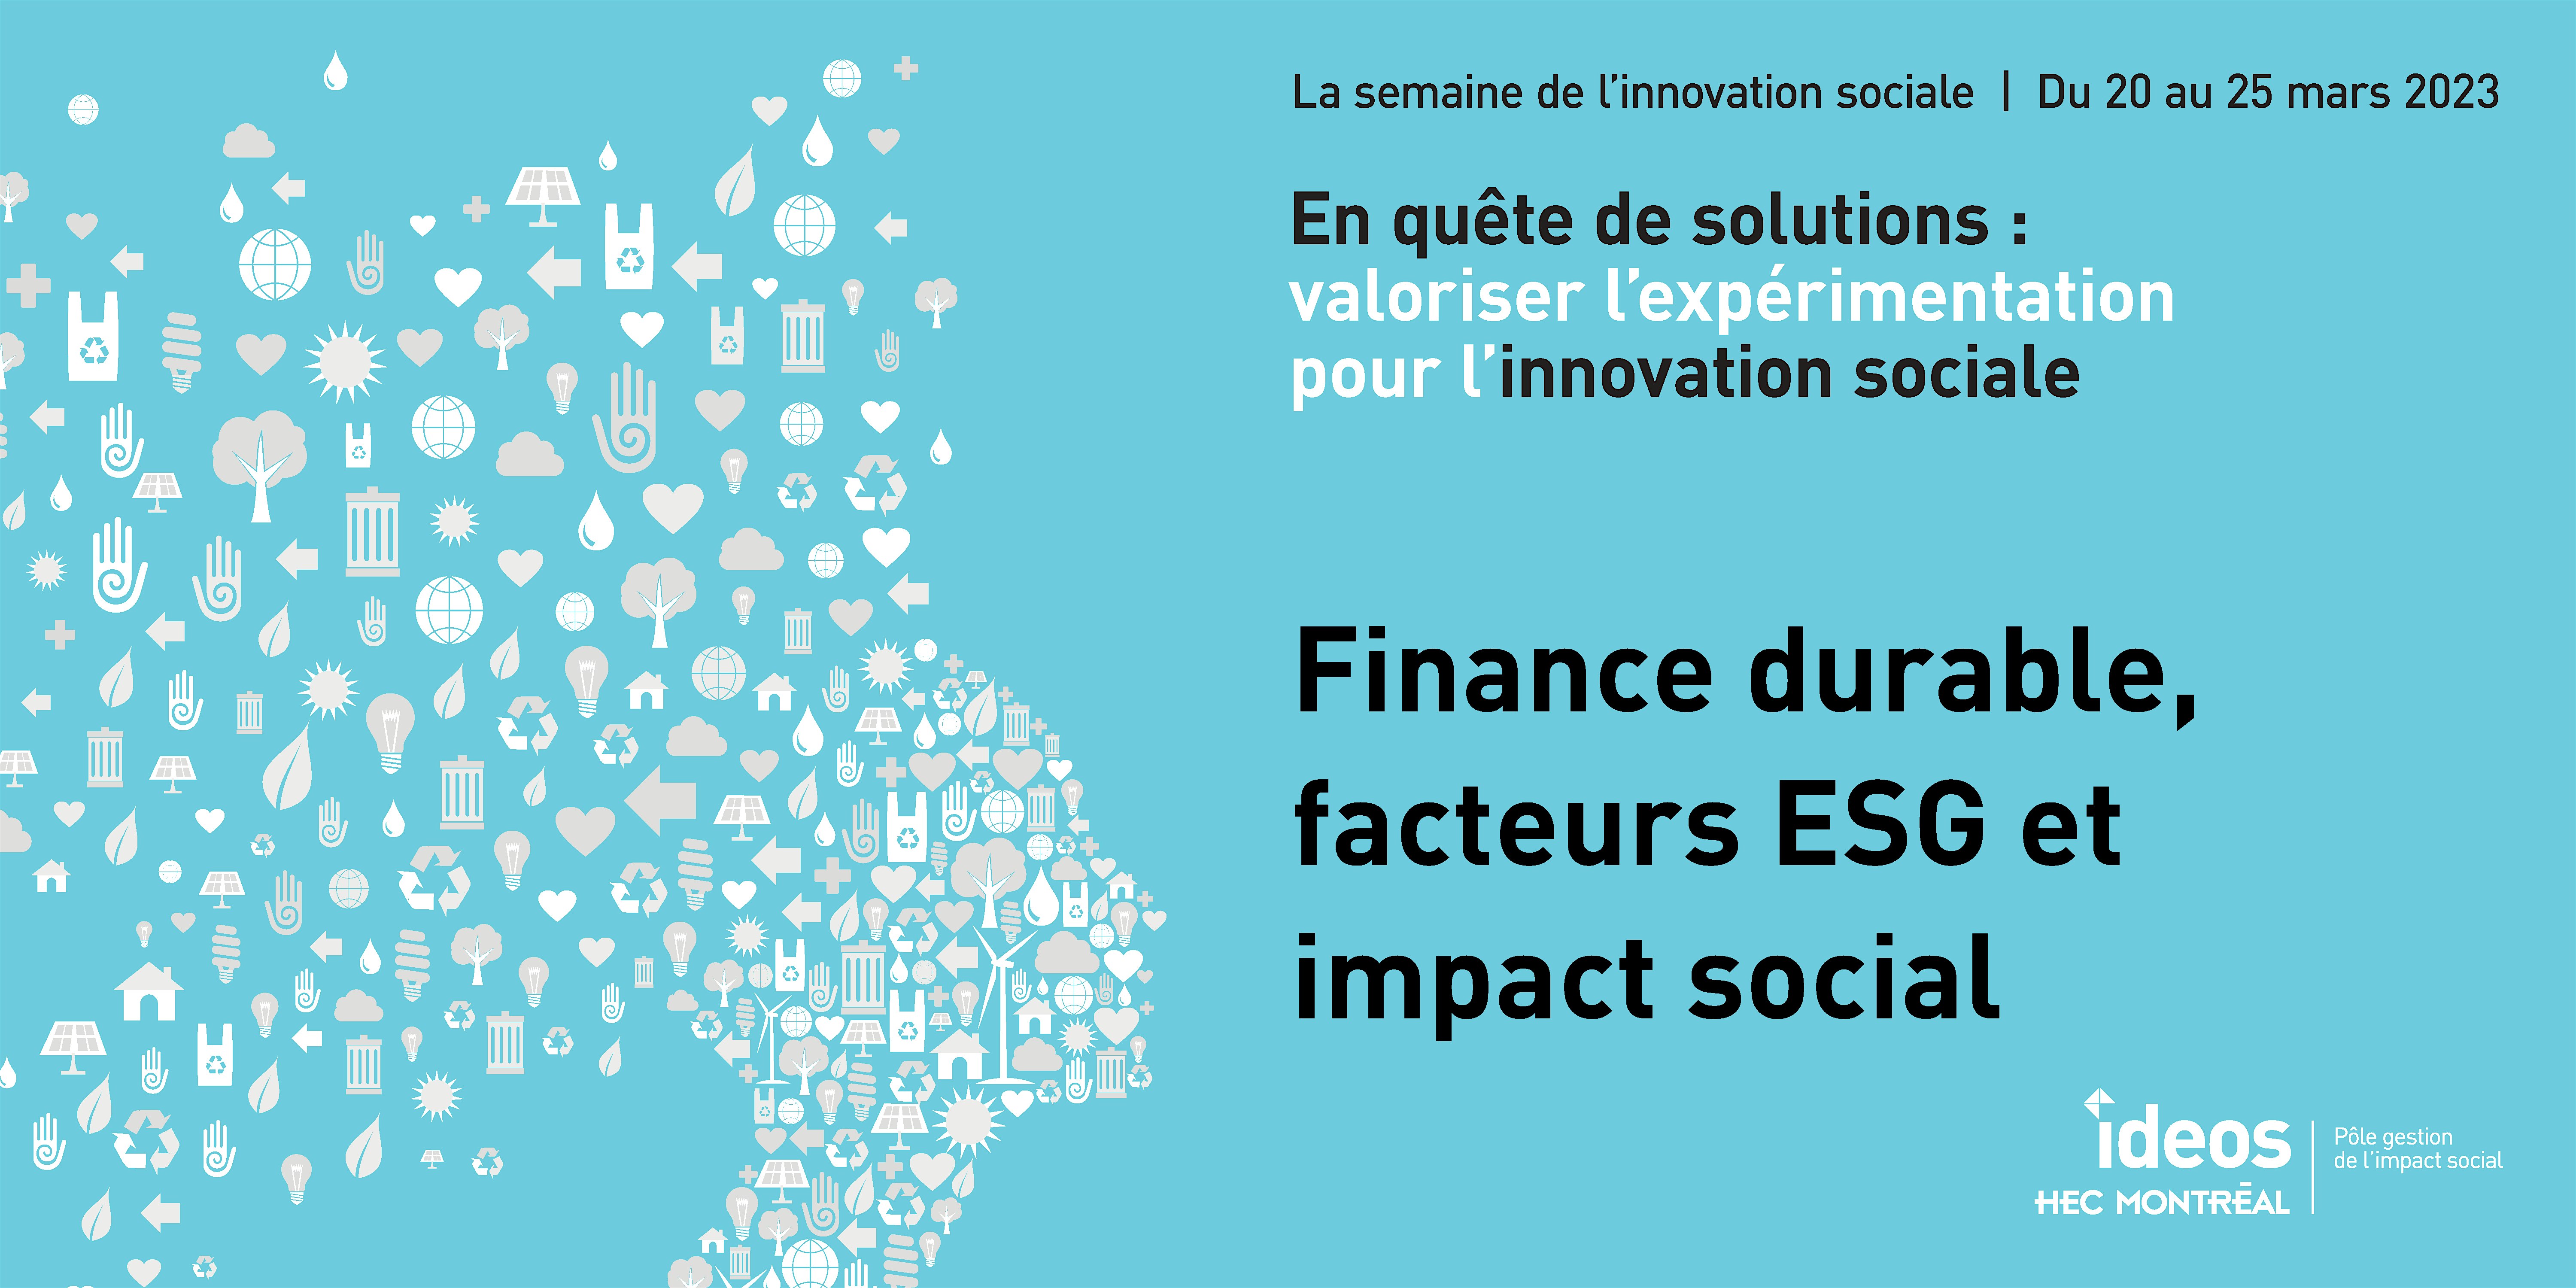 Finance durable, facteurs ESG et impact social